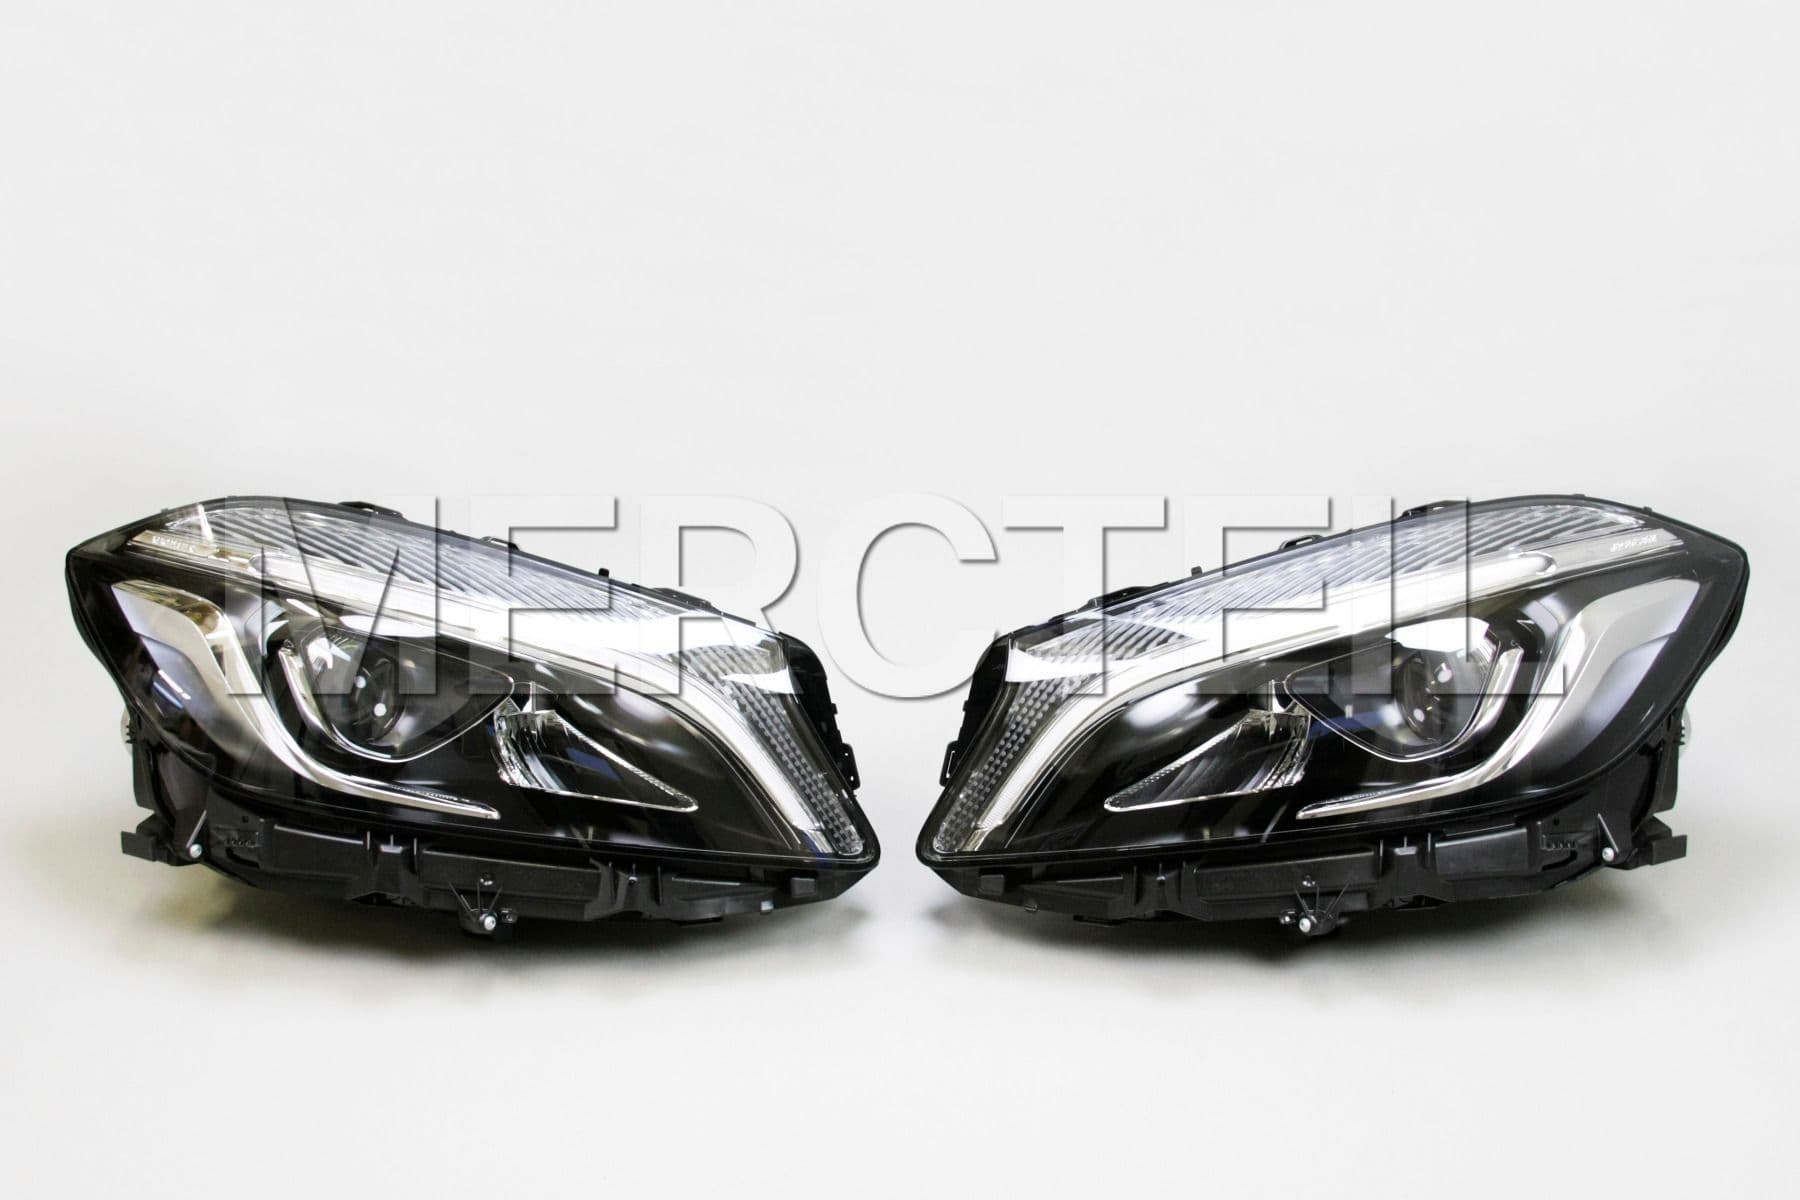 Nachrüstung: Mercedes-Benz LED Projektor mit Mercedes-Benz Stern